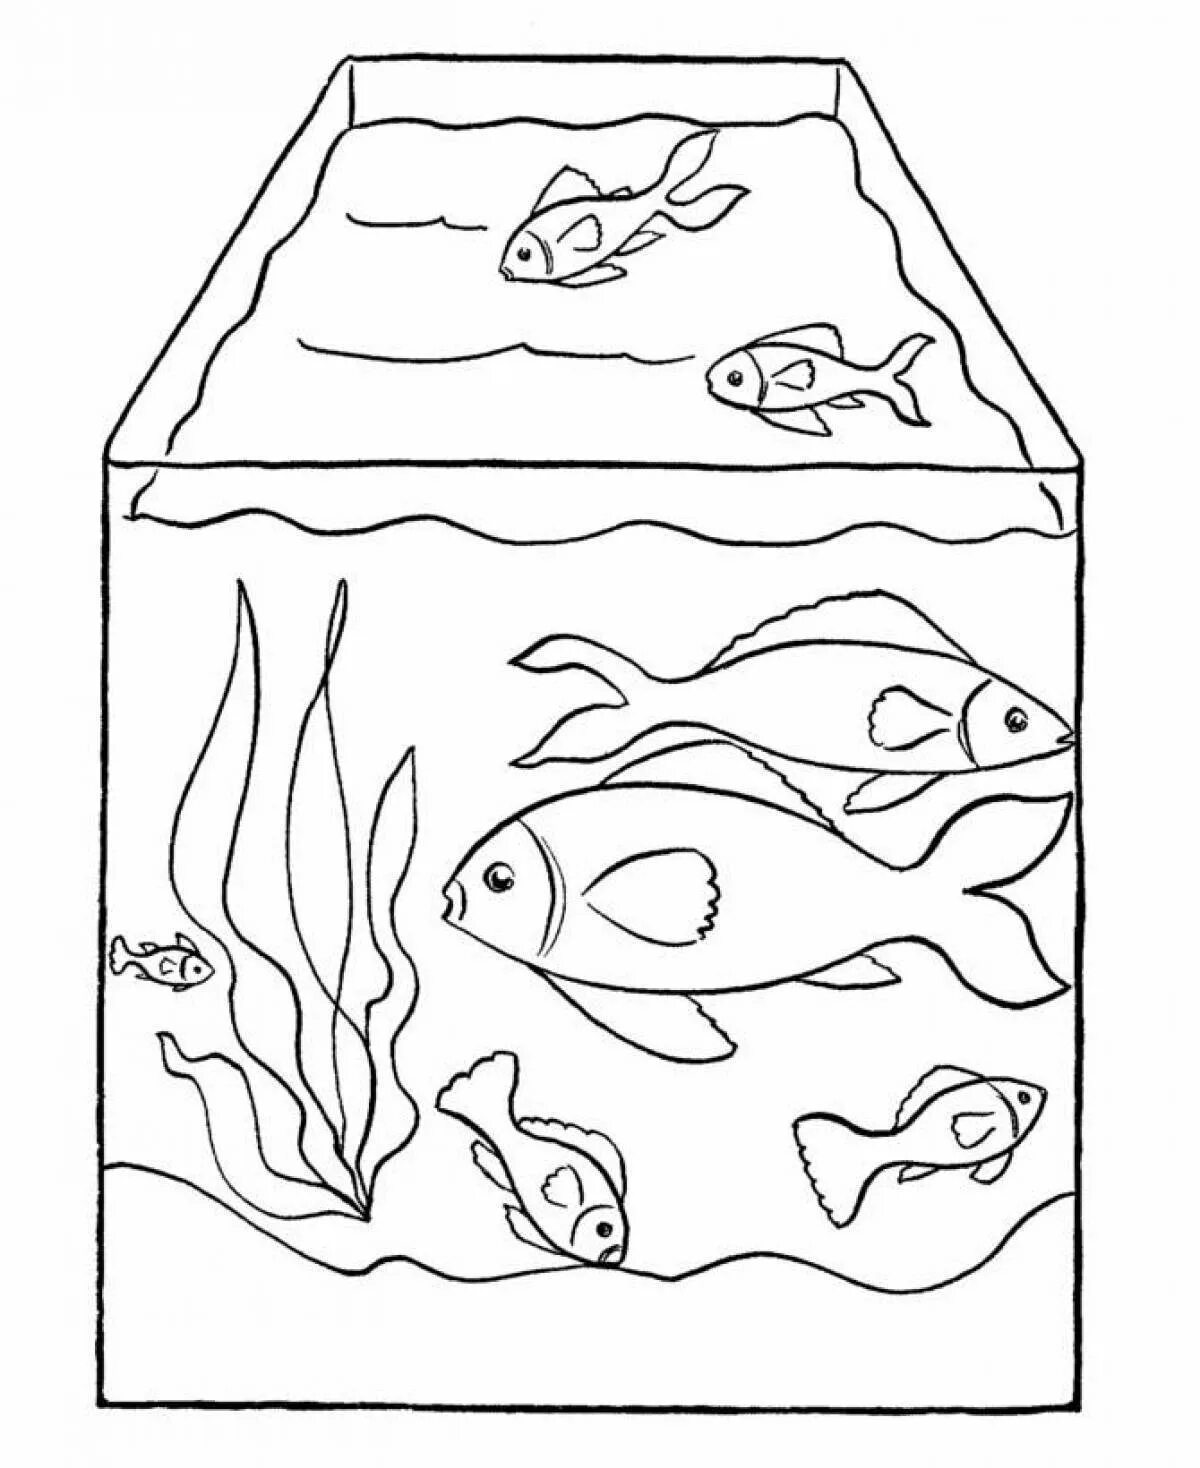 Раскраска аквариум с рыбками. Аквариум раскраска для детей. Аквариум с рыбками раскраска для малышей. Аквариумные рыбки раскраска.